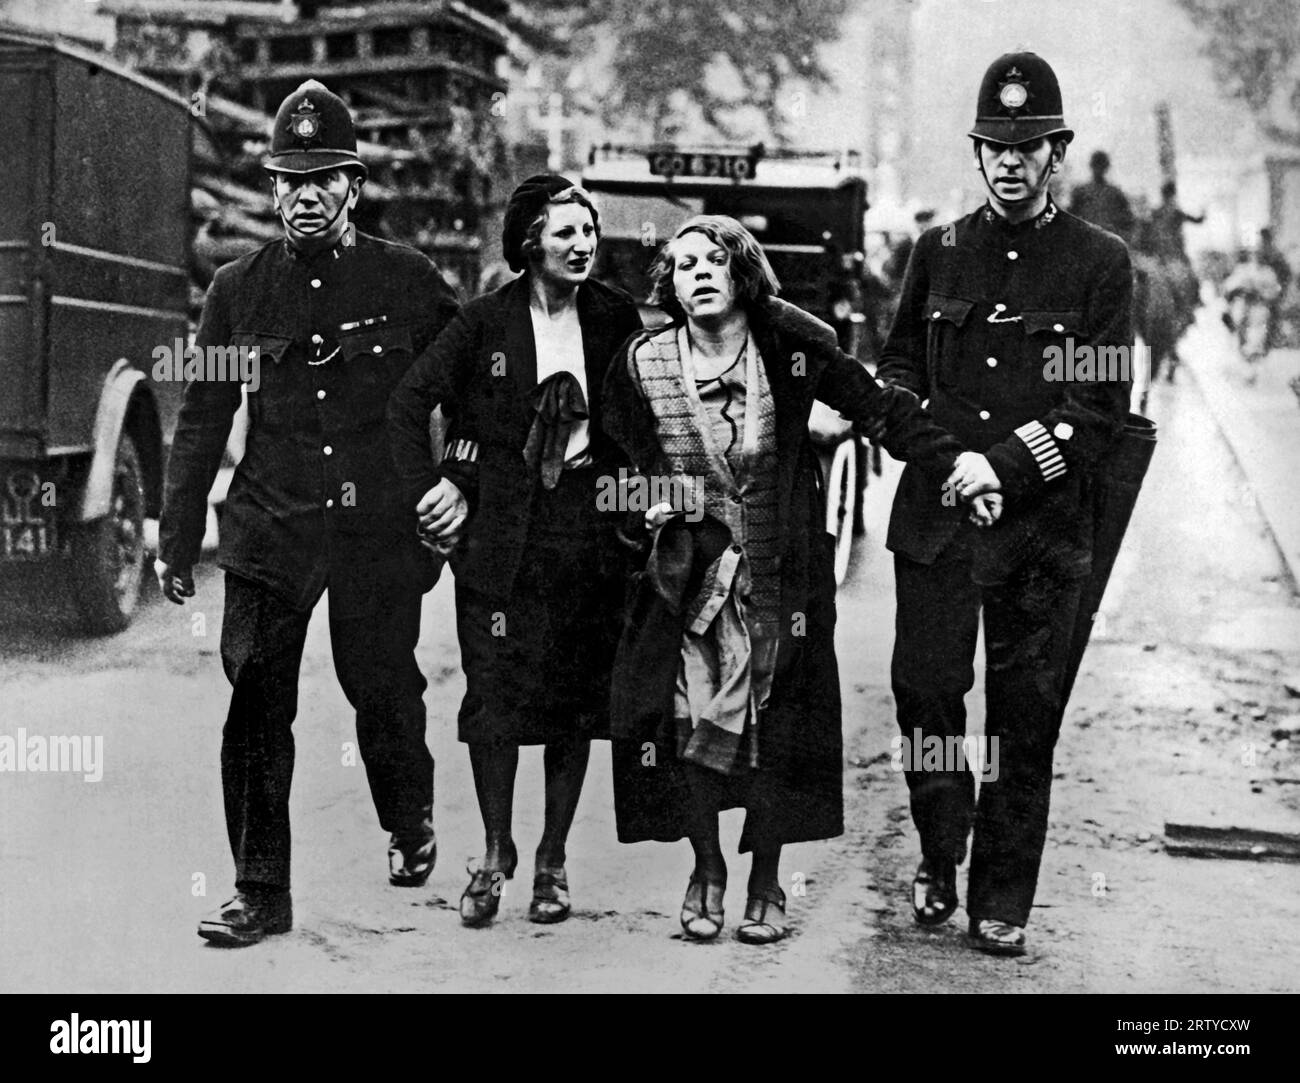 Londres, Angleterre c. 1931 la police montée et les sympathisants des chômeurs se sont affrontés lors d'une manifestation devant le Parlement aujourd'hui. Ces deux filles ont été arrêtées par la police au plus fort de la manifestation. Banque D'Images